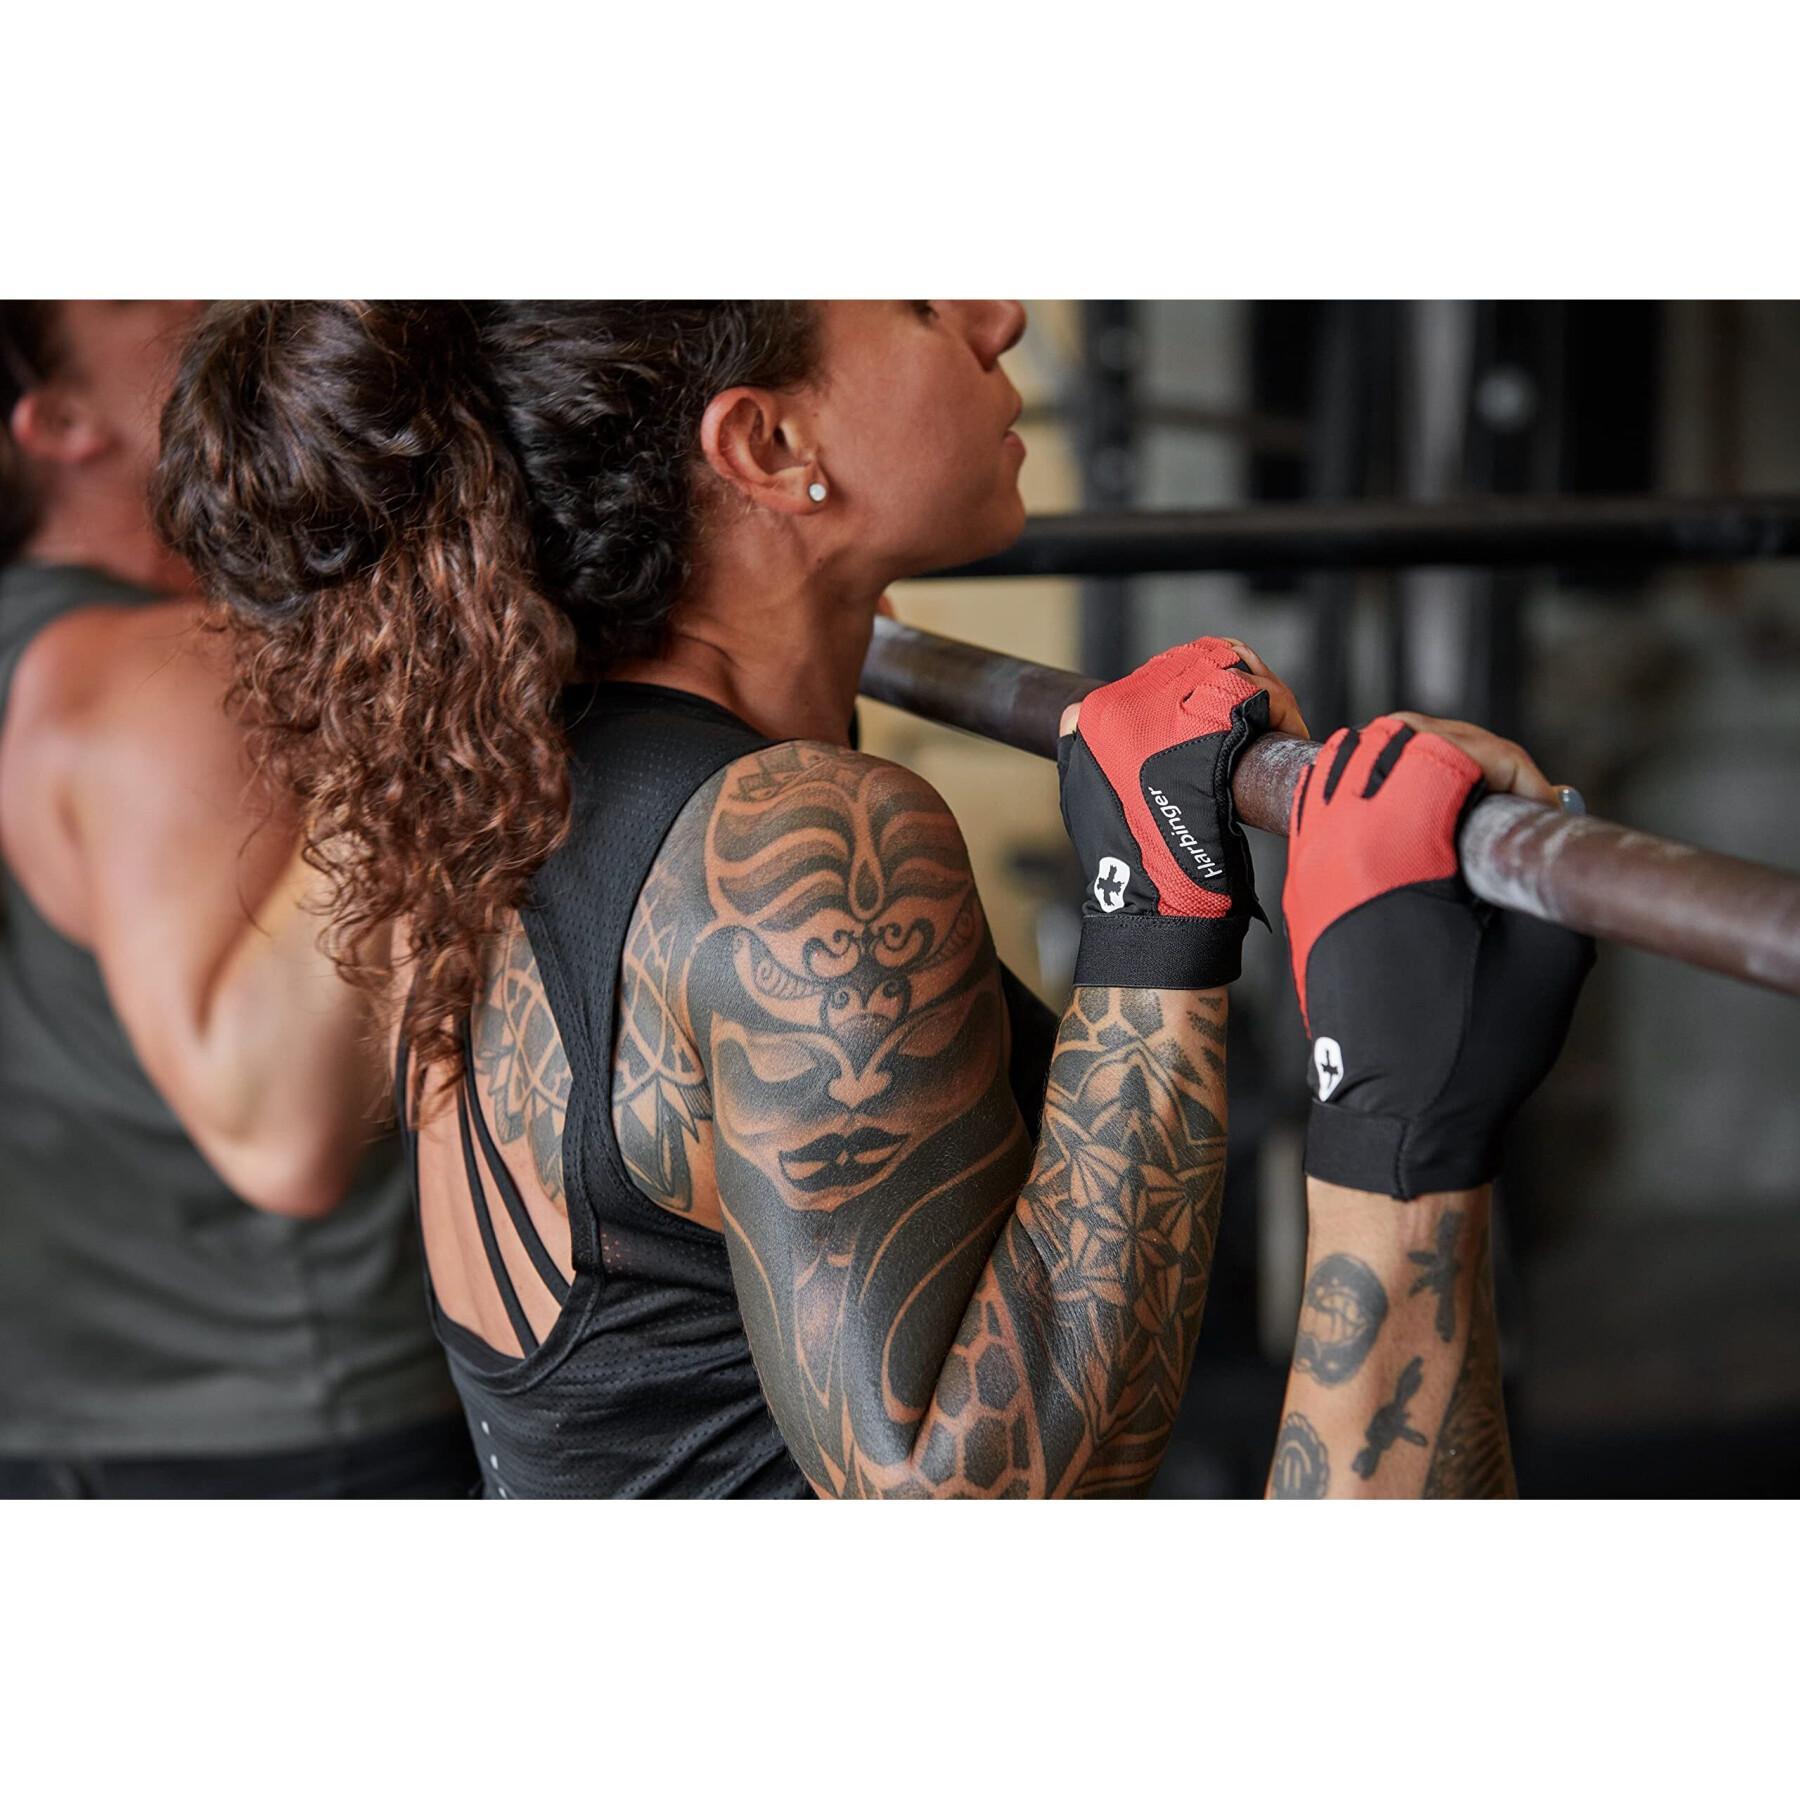 Gloves from Fitness Harbinger Flexfit 2.0